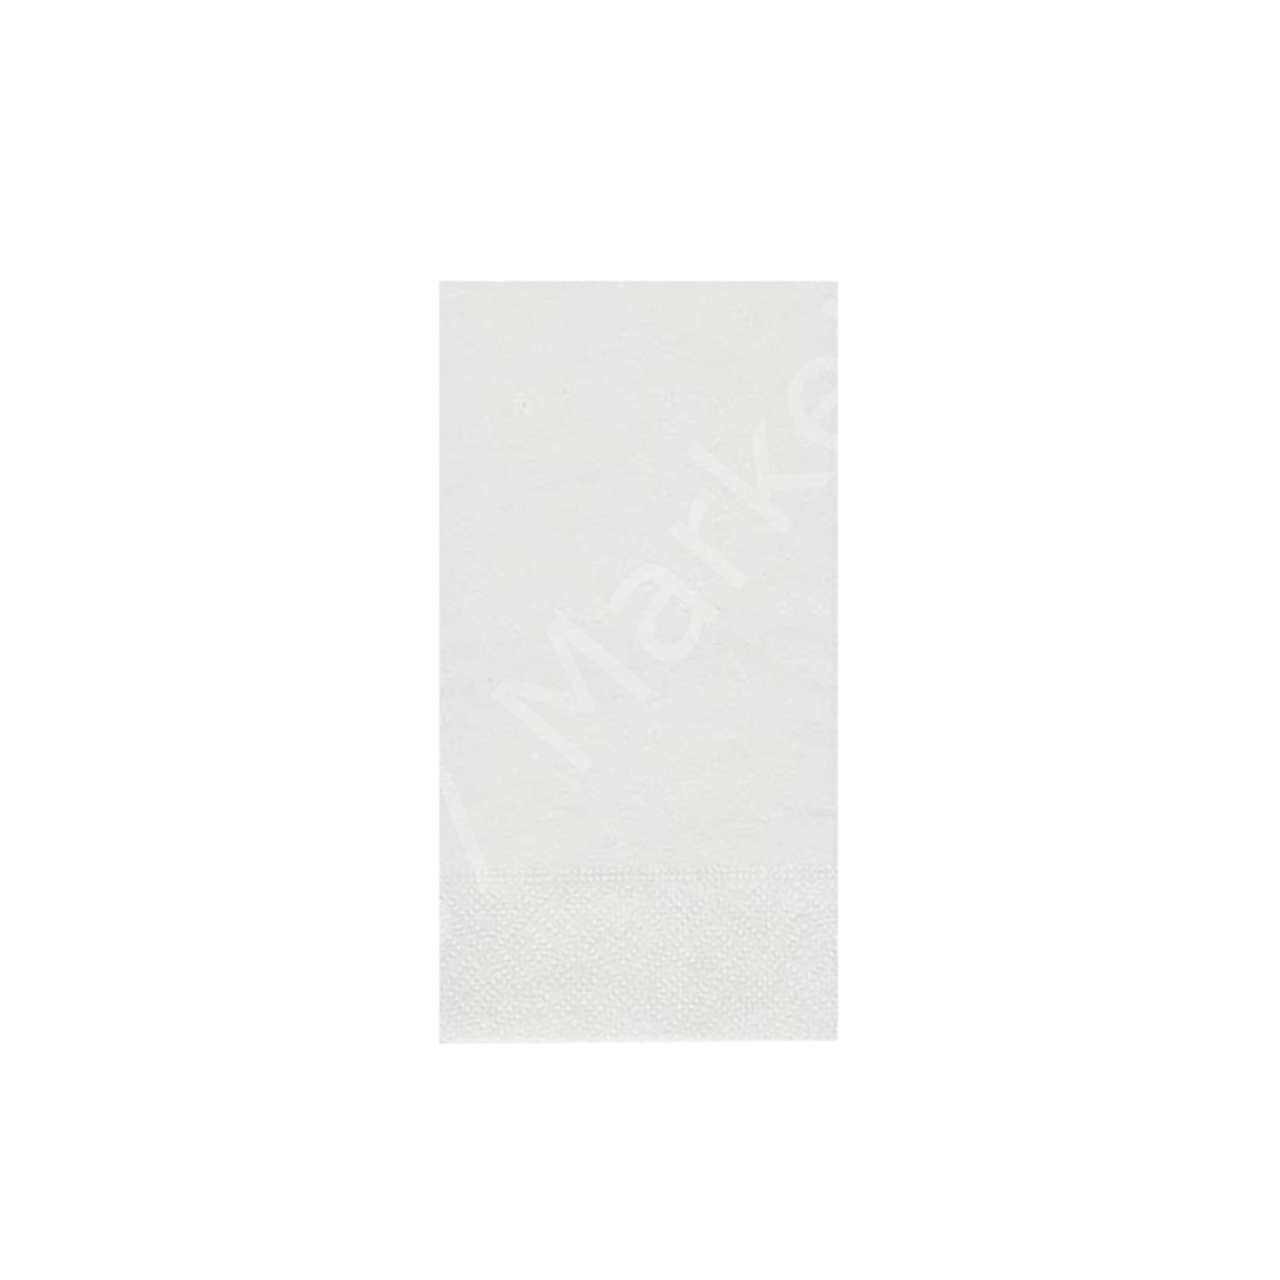 Beyaz Lüks Peçete 30x30 Cm 1/8 Garson Katlama (1200'lü Koli)